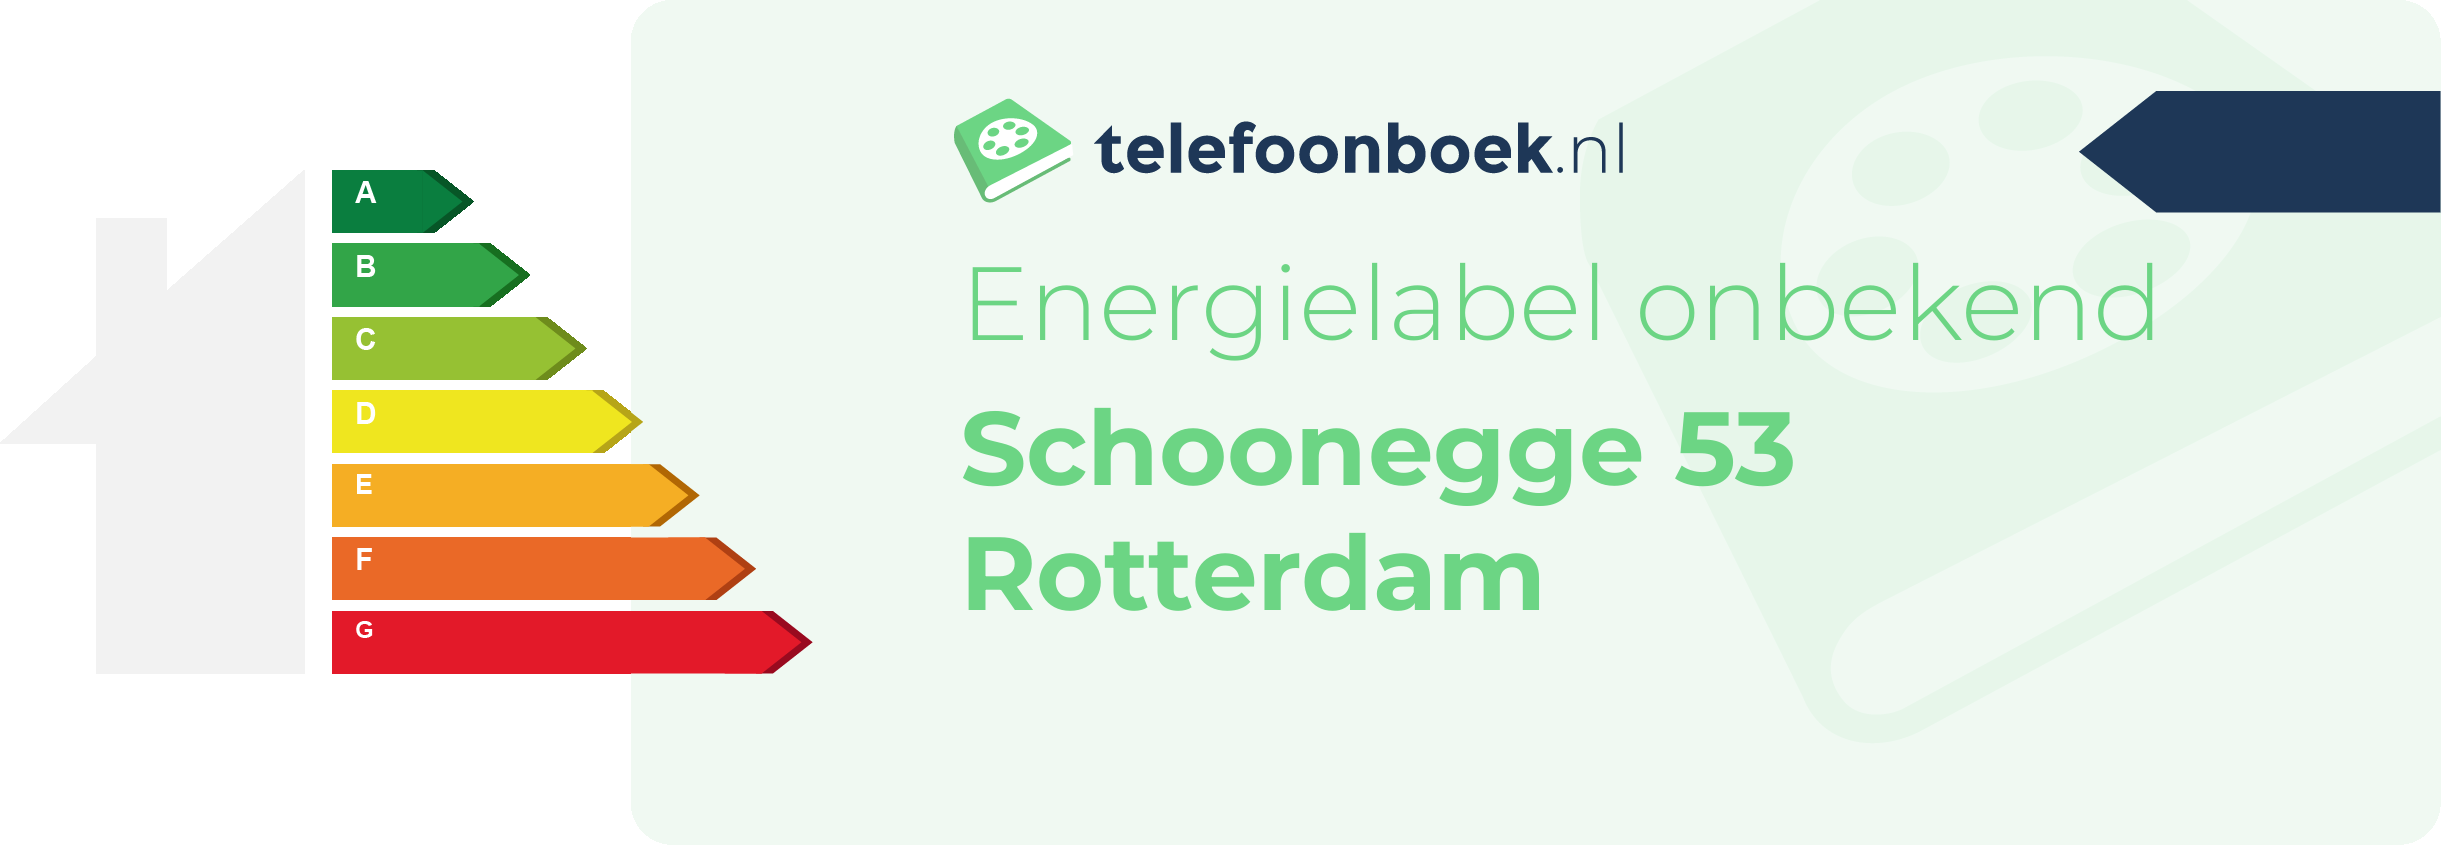 Energielabel Schoonegge 53 Rotterdam